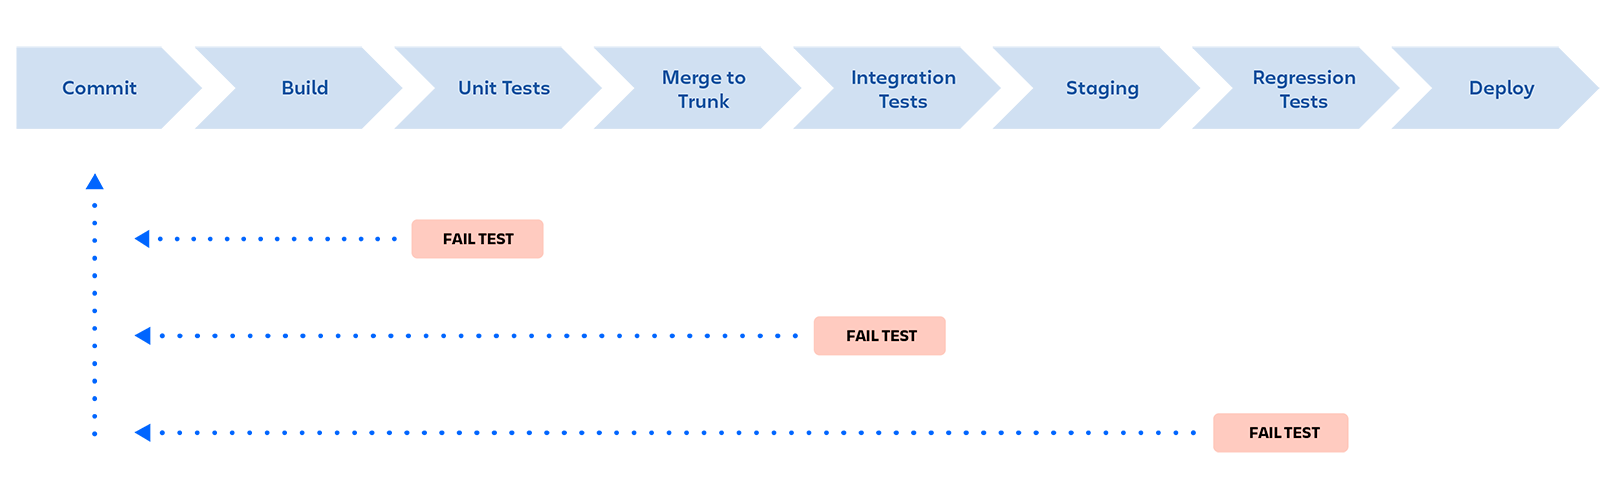 DevOps 管道：提交、构建、单元测试、合并到主干、集成测试、预备、回归测试、部署。如果测试在任一阶段失败，管道都会停止，并向开发人员提供反馈。